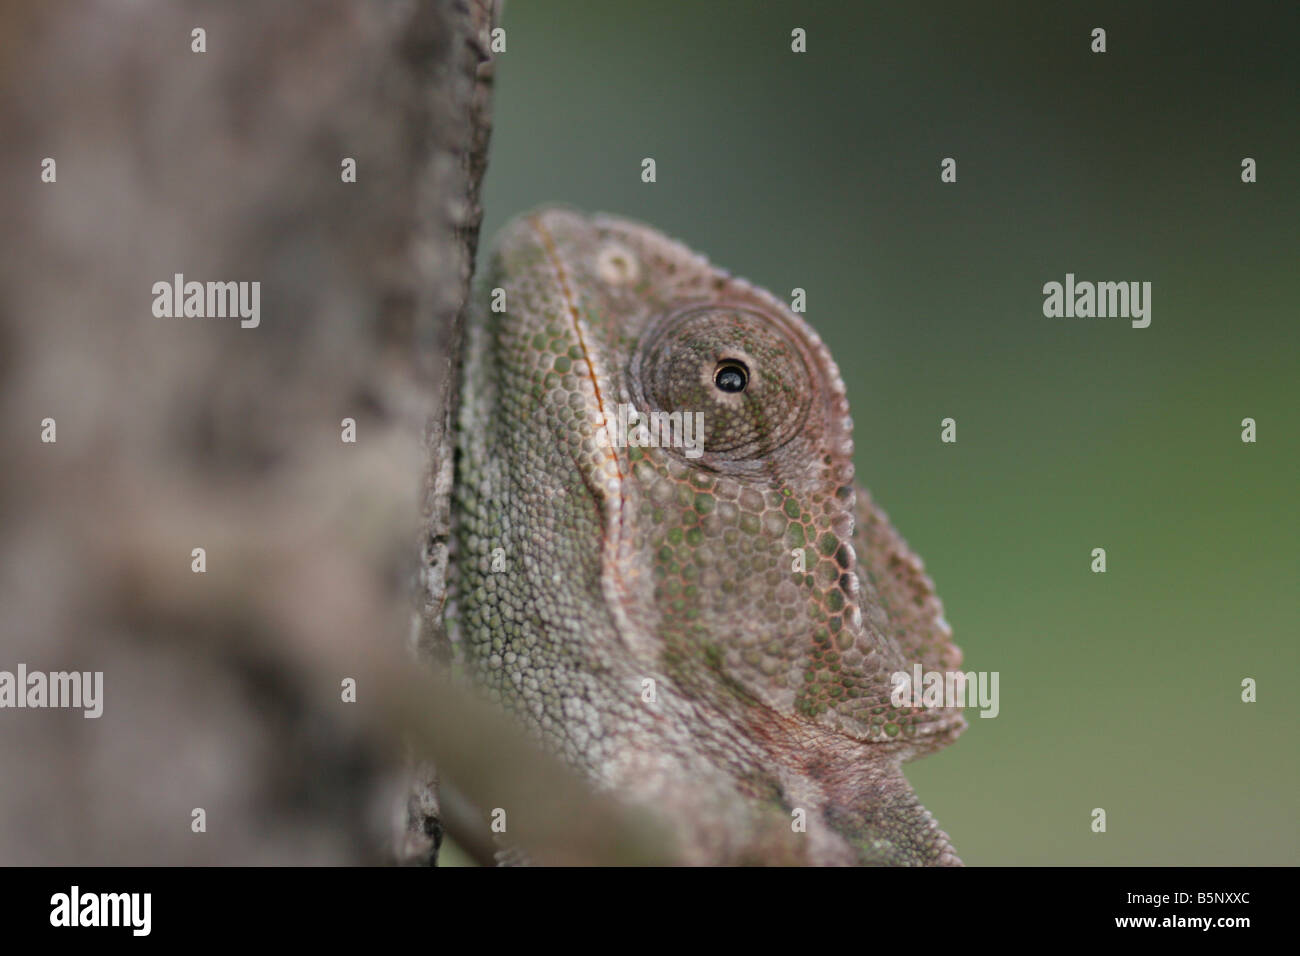 Nahaufnahme des Kopfes und der Augen von einem gemeinsamen Chamäleon Chamaeleo chamaeleon Stockfoto